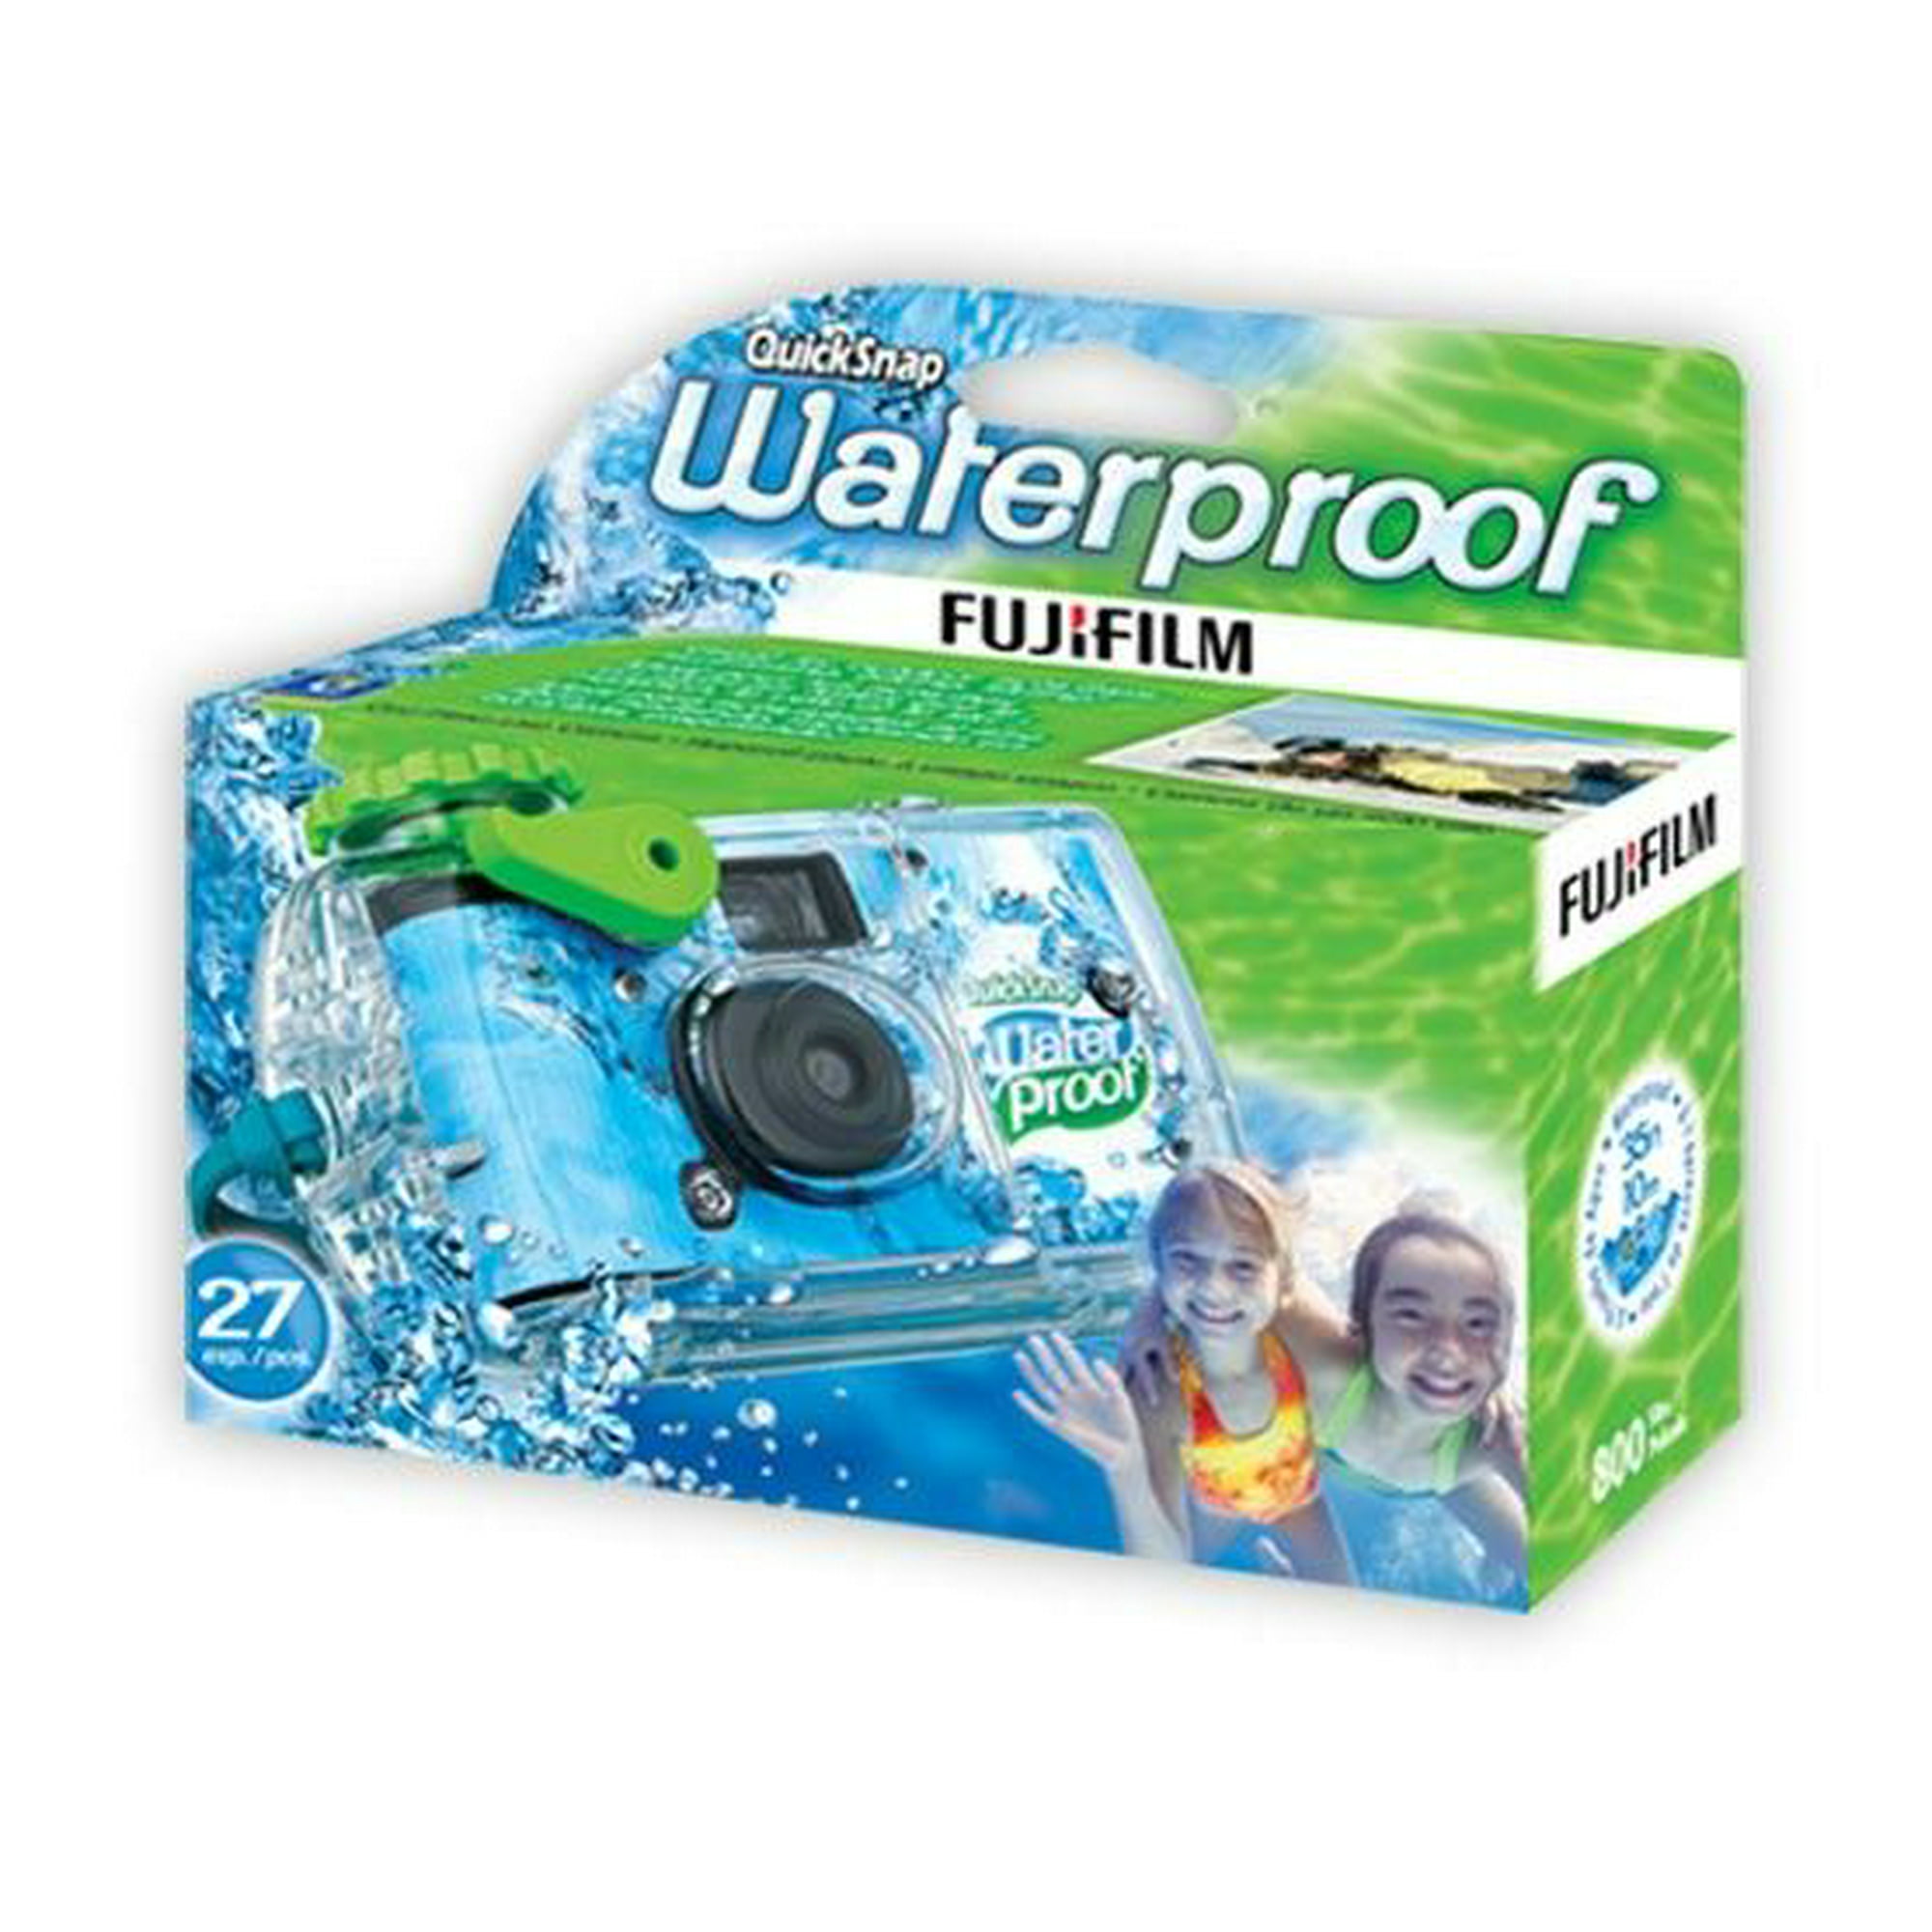 despierta Post impresionismo Enredo Cámara acuática Fujifilm Waterproof Desechable | Walmart